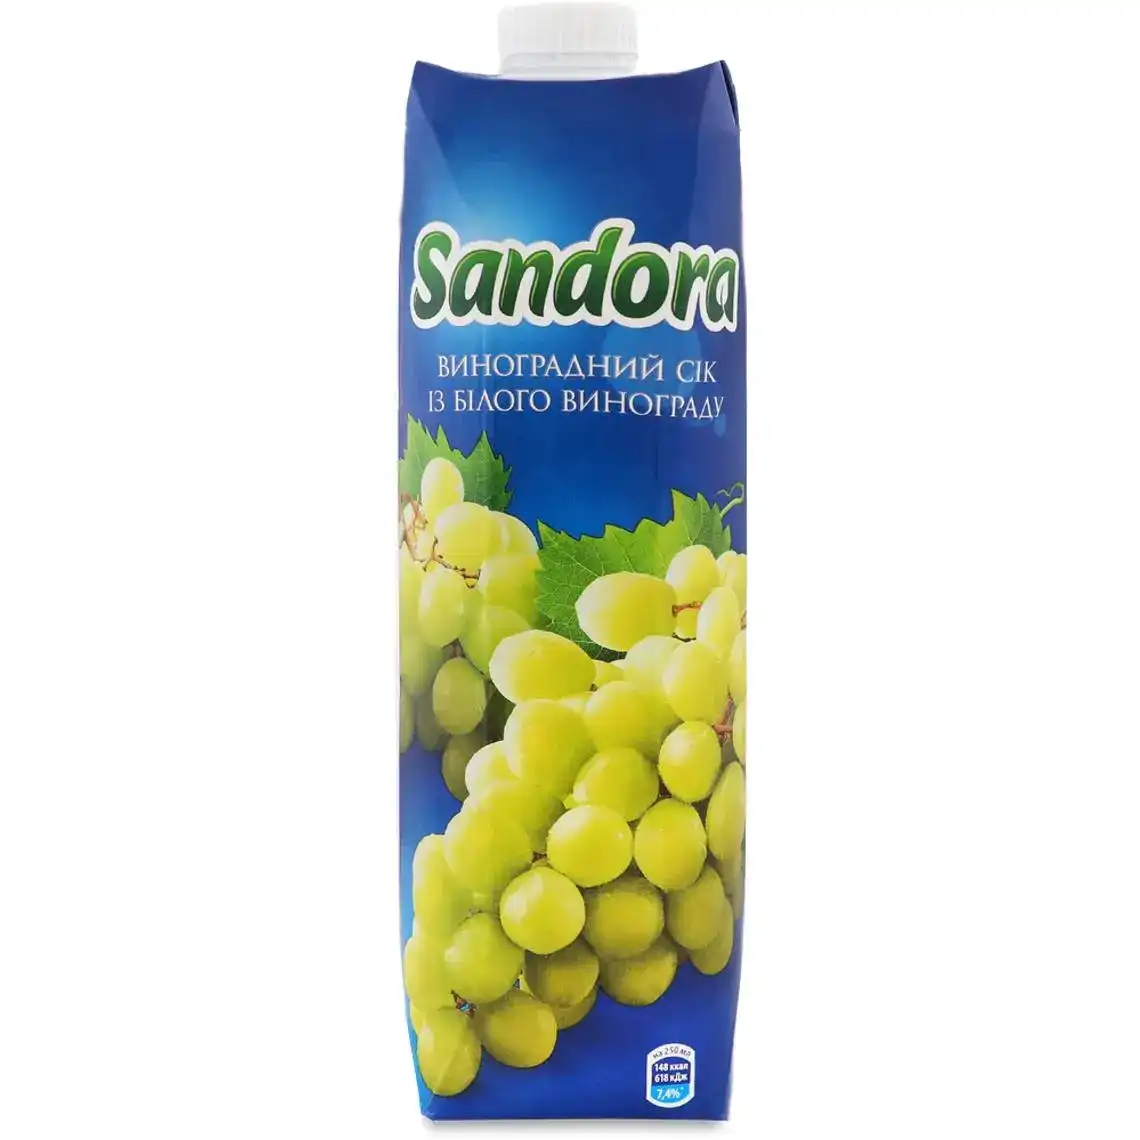 Сік Sandora виноградний 950 мл